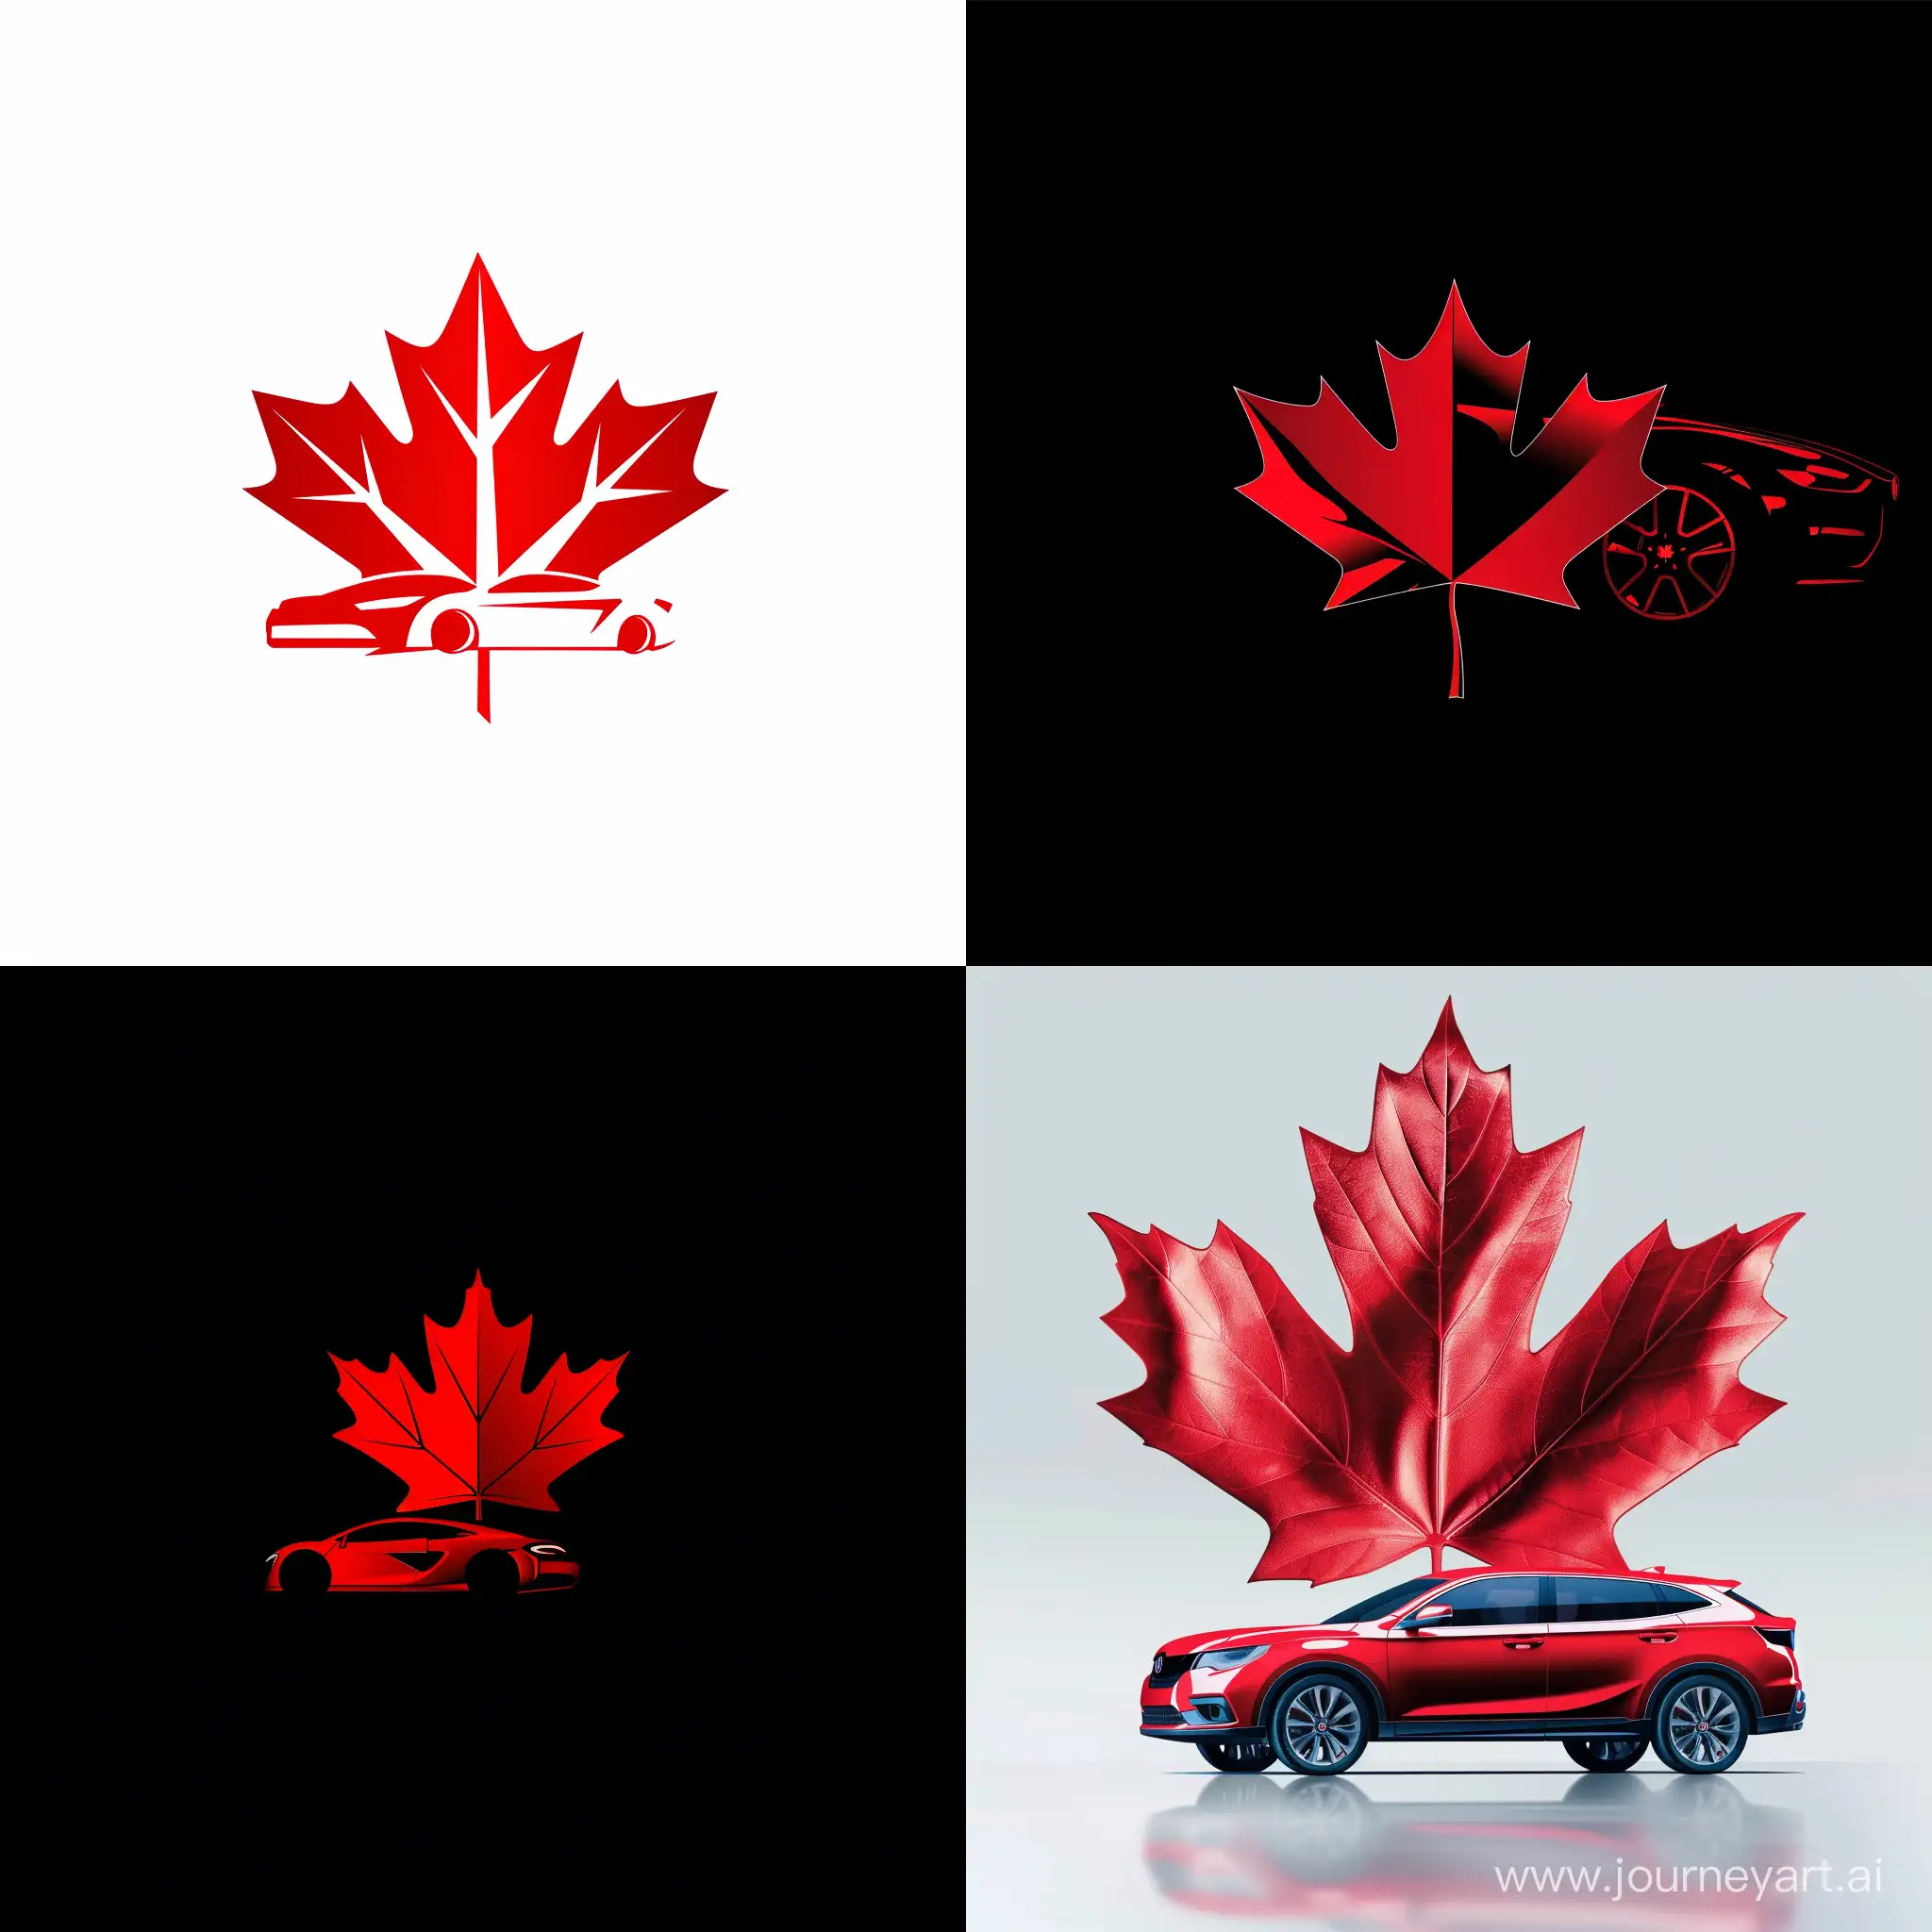 Логотип компании по продаже автомобилей, красный кленовы лист, автомобиль

